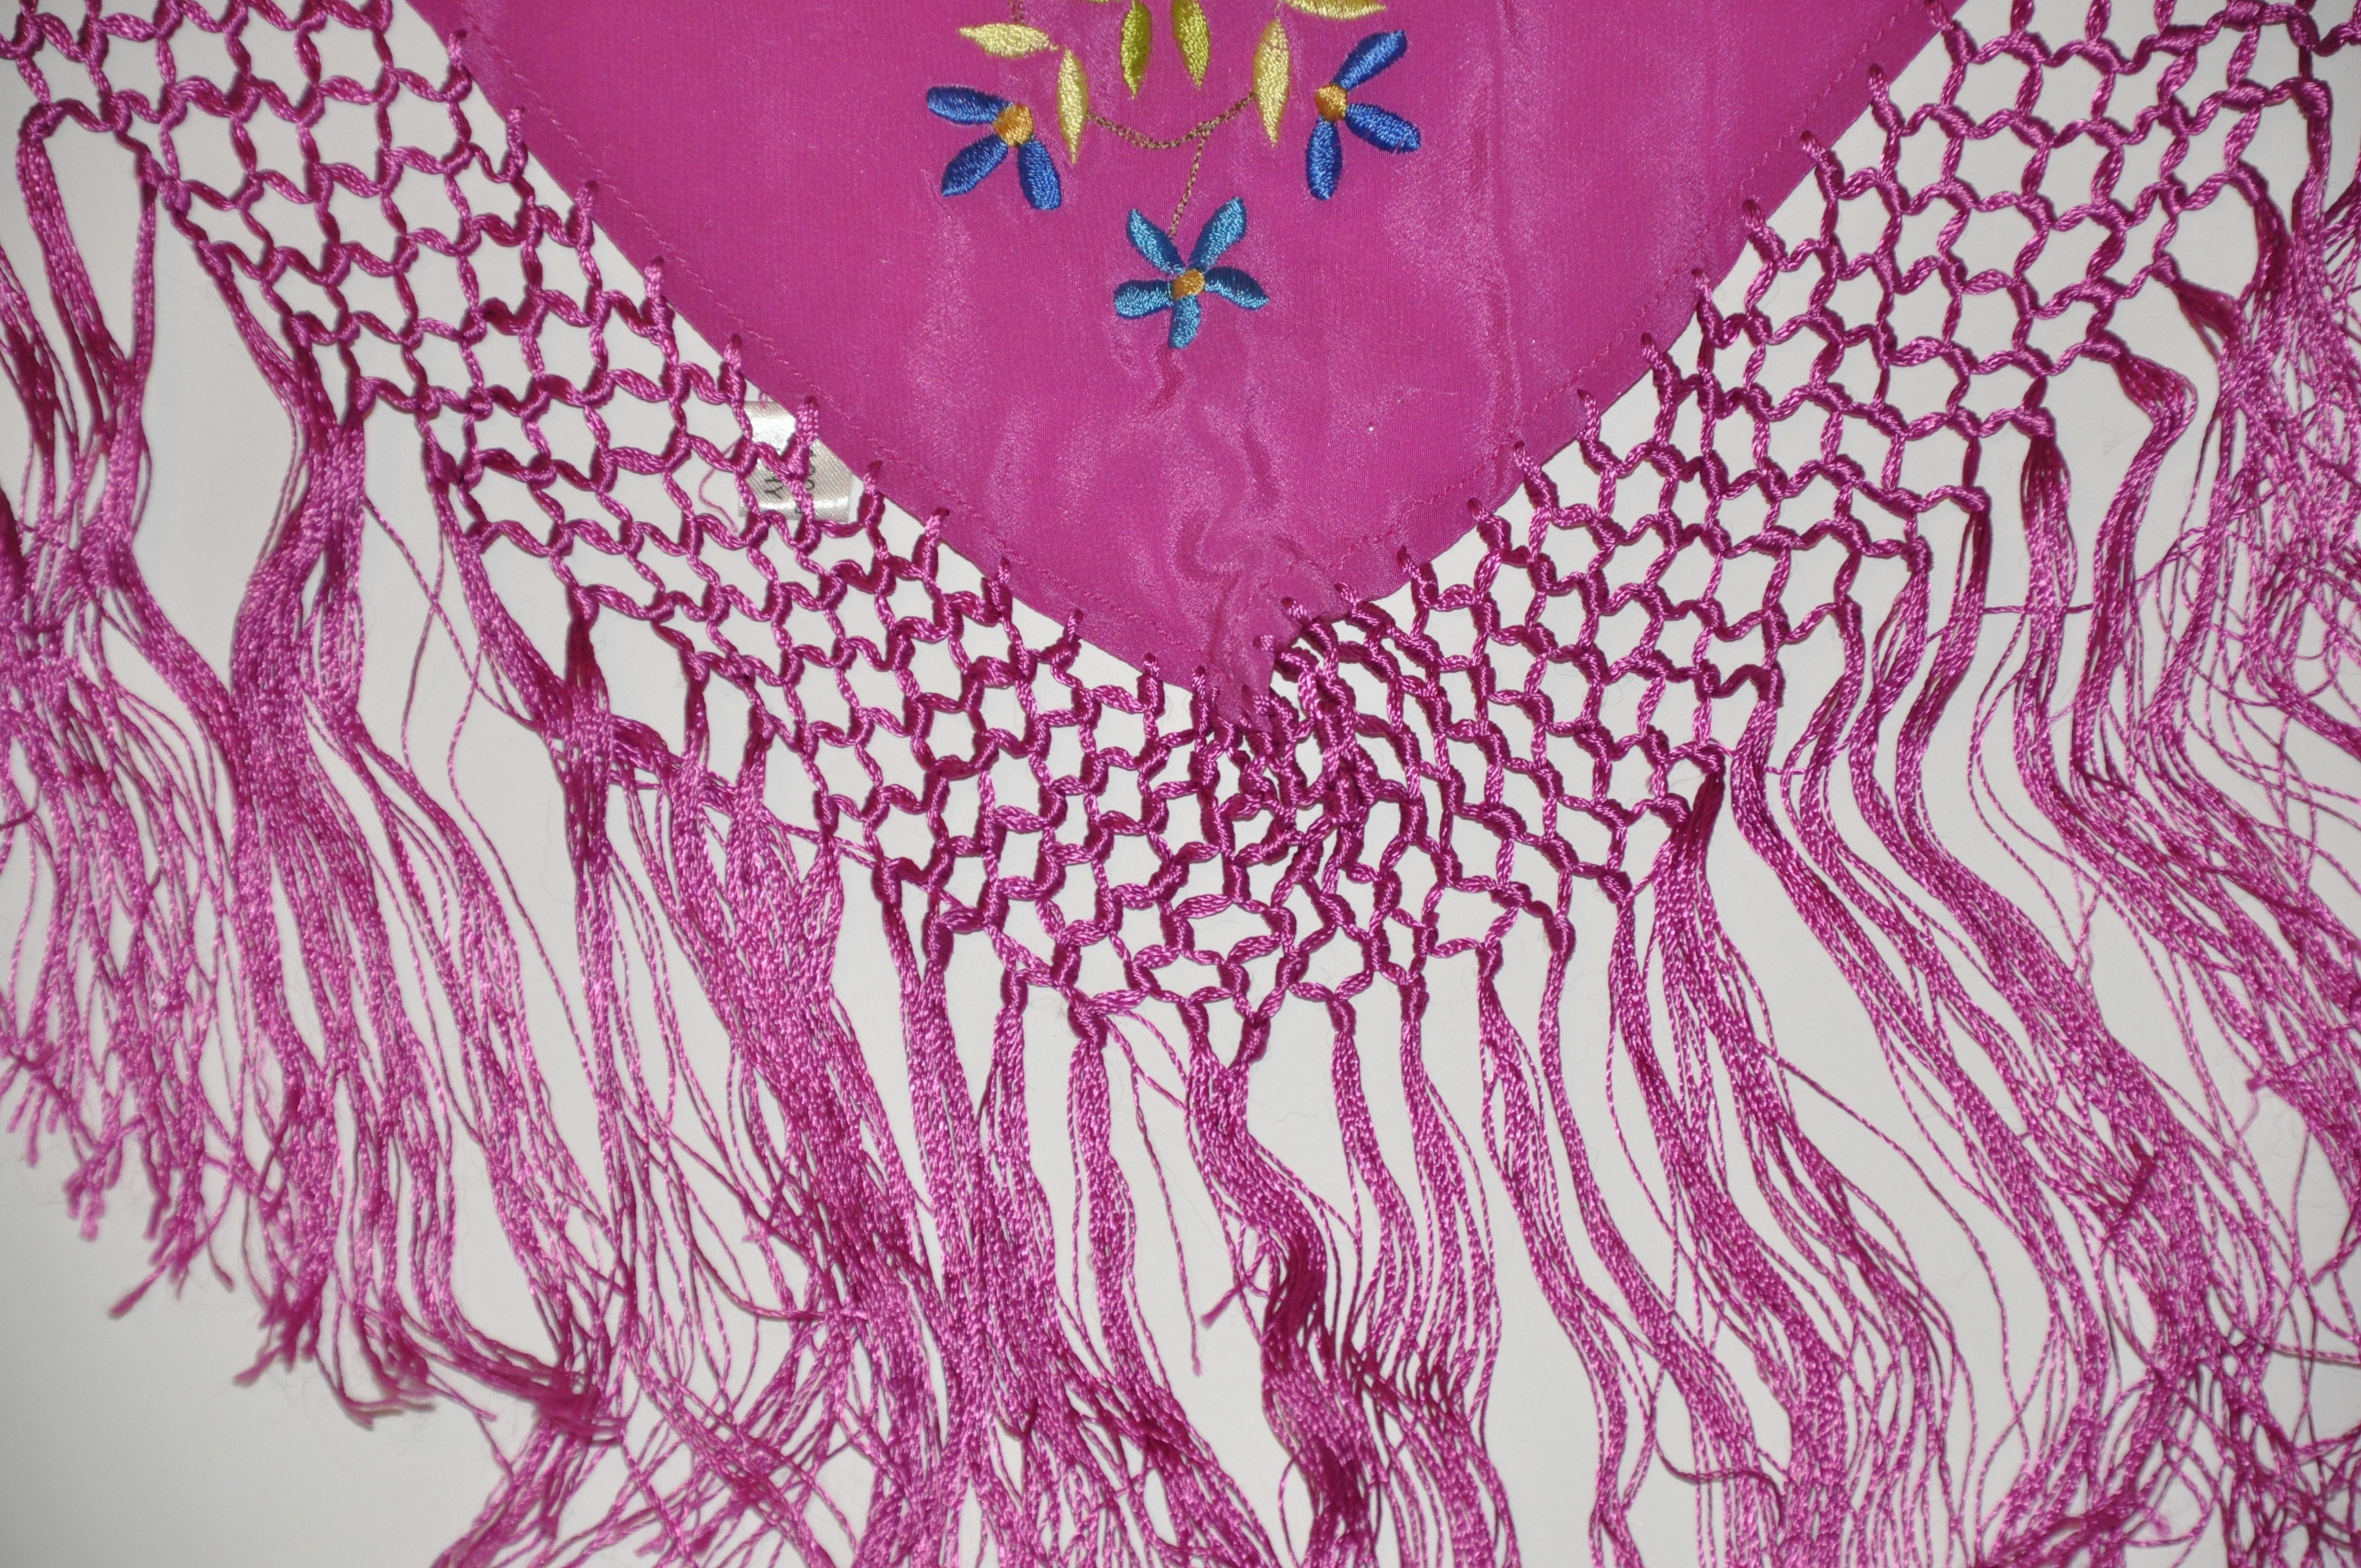        Ce magnifique foulard en soie fuchsia est orné d'éclats de fleurs multicolores brodées à la main de plusieurs tailles. Il est rehaussé d'un cordon de soie à plusieurs niveaux noué à la main qui souligne la frange mesurant 15 cm de long. Le